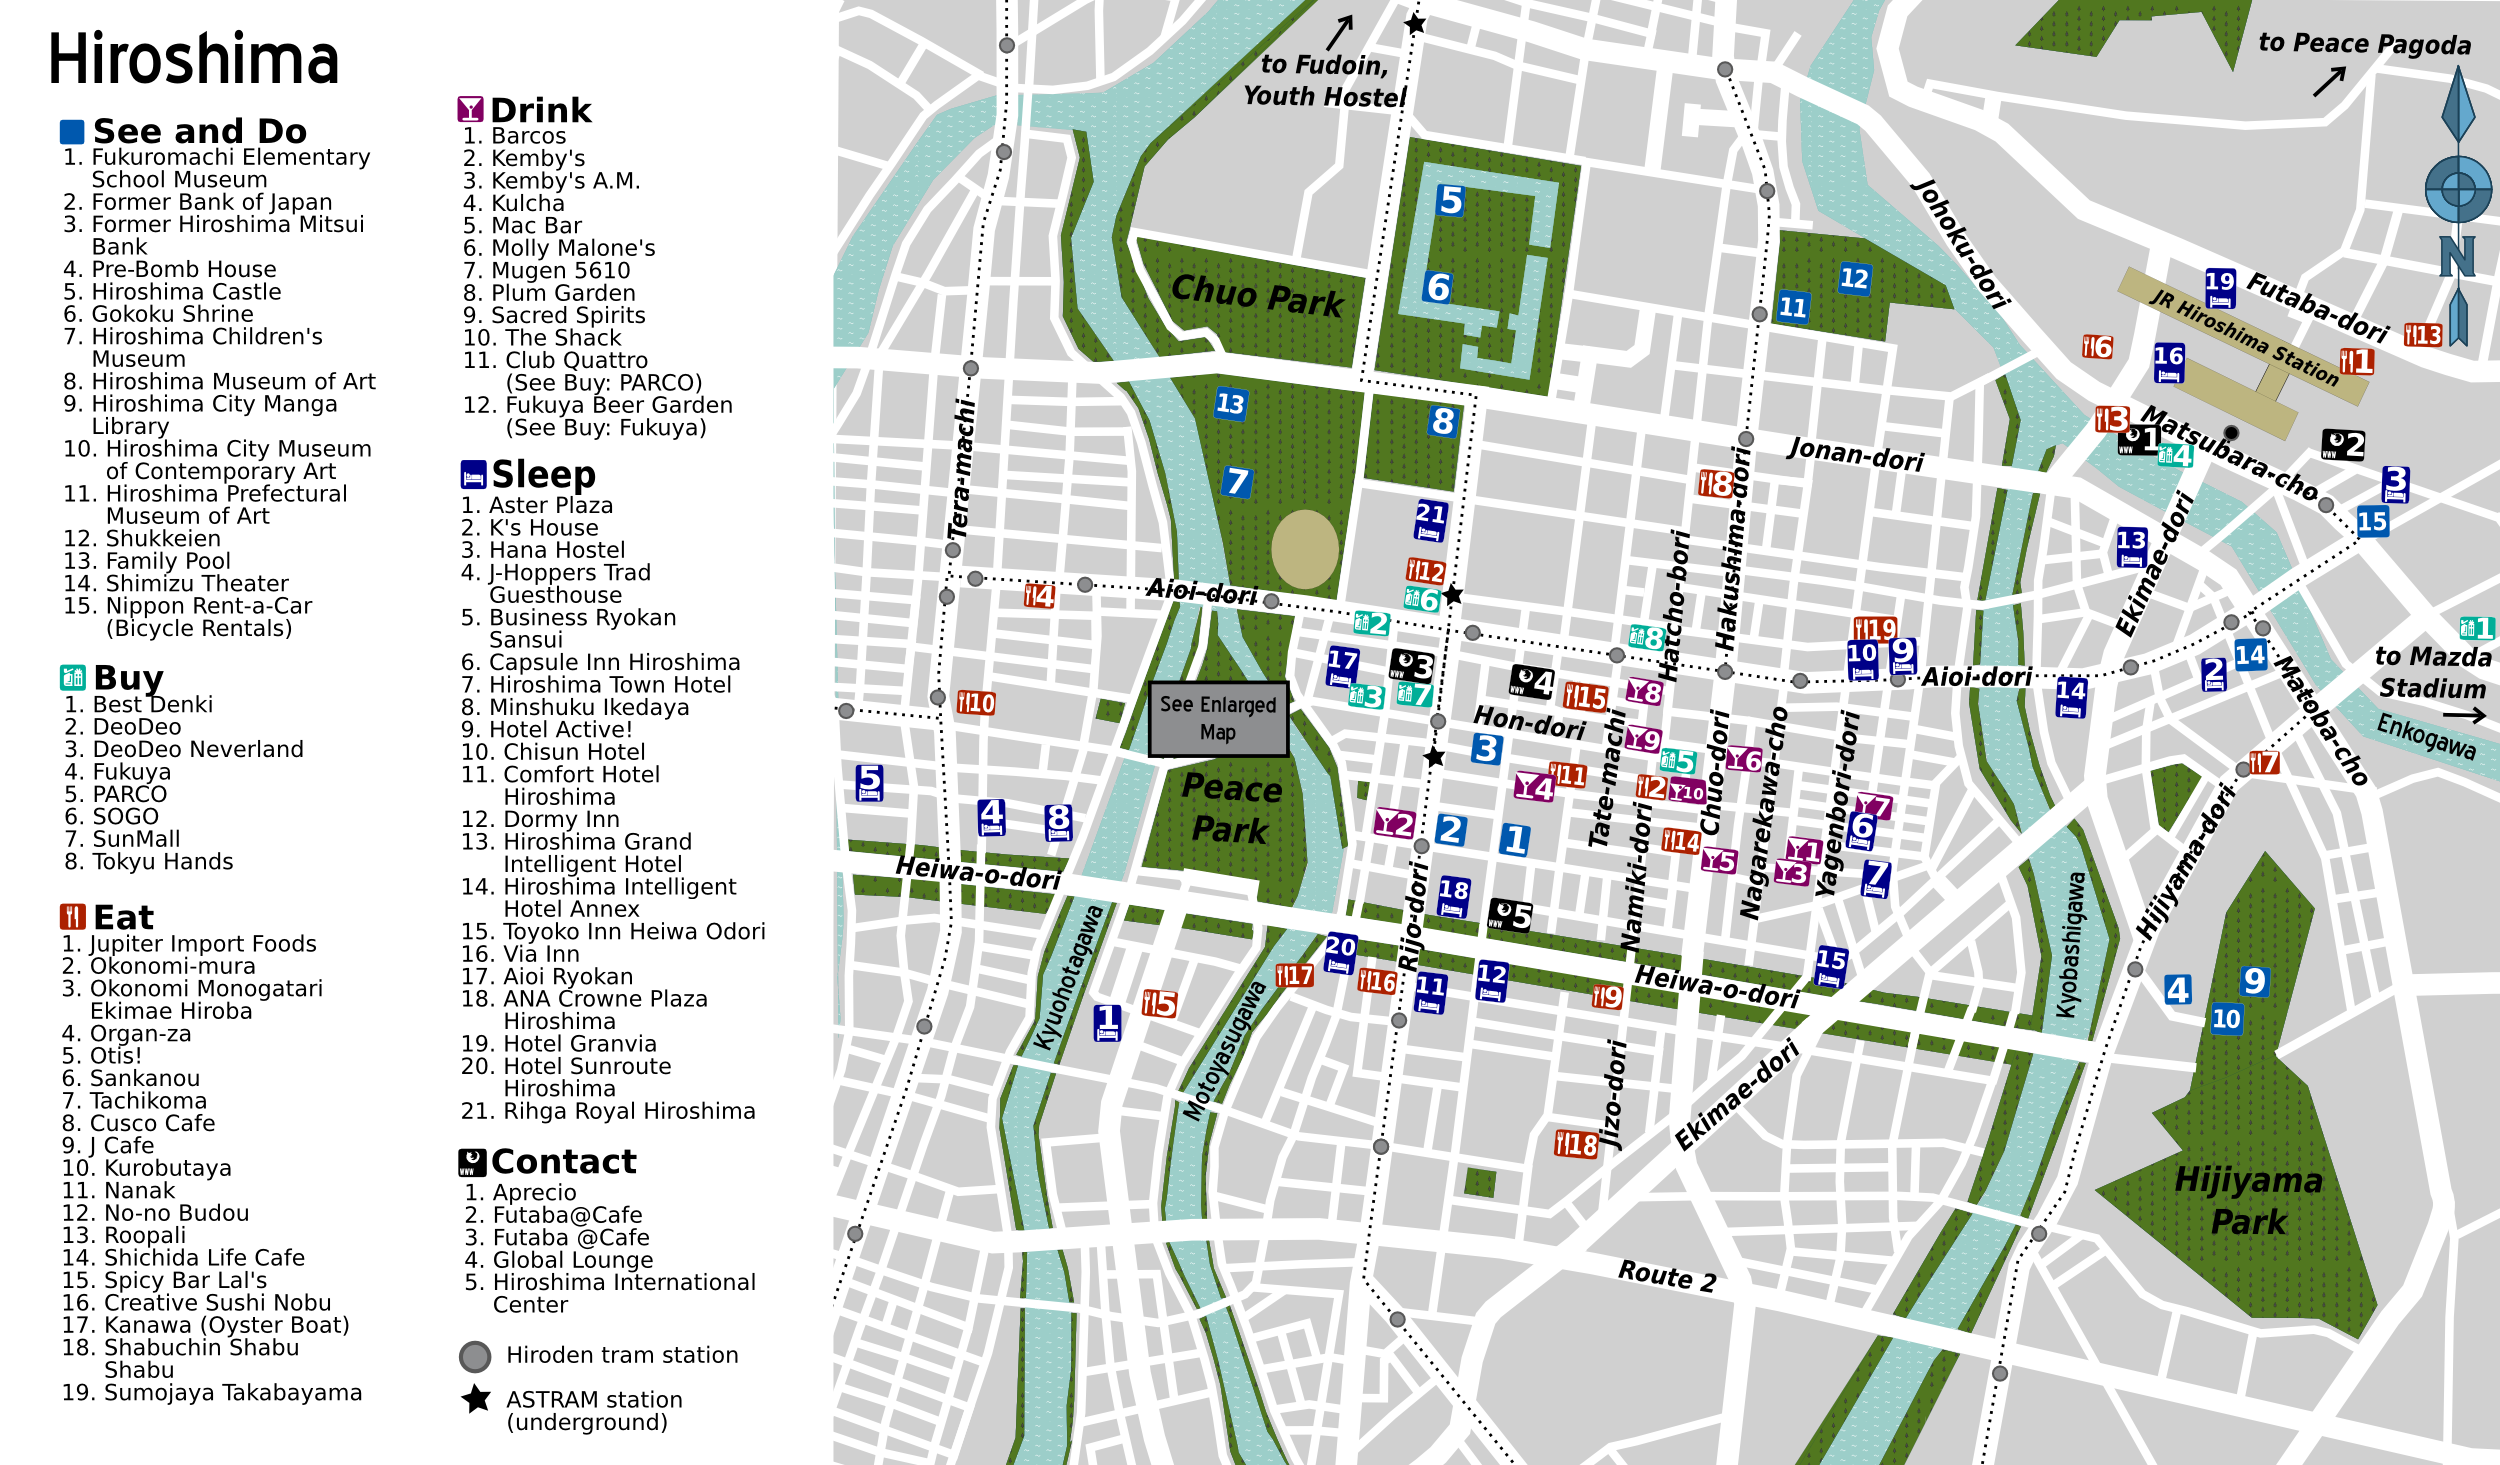 File:Sofia Full City Map.png